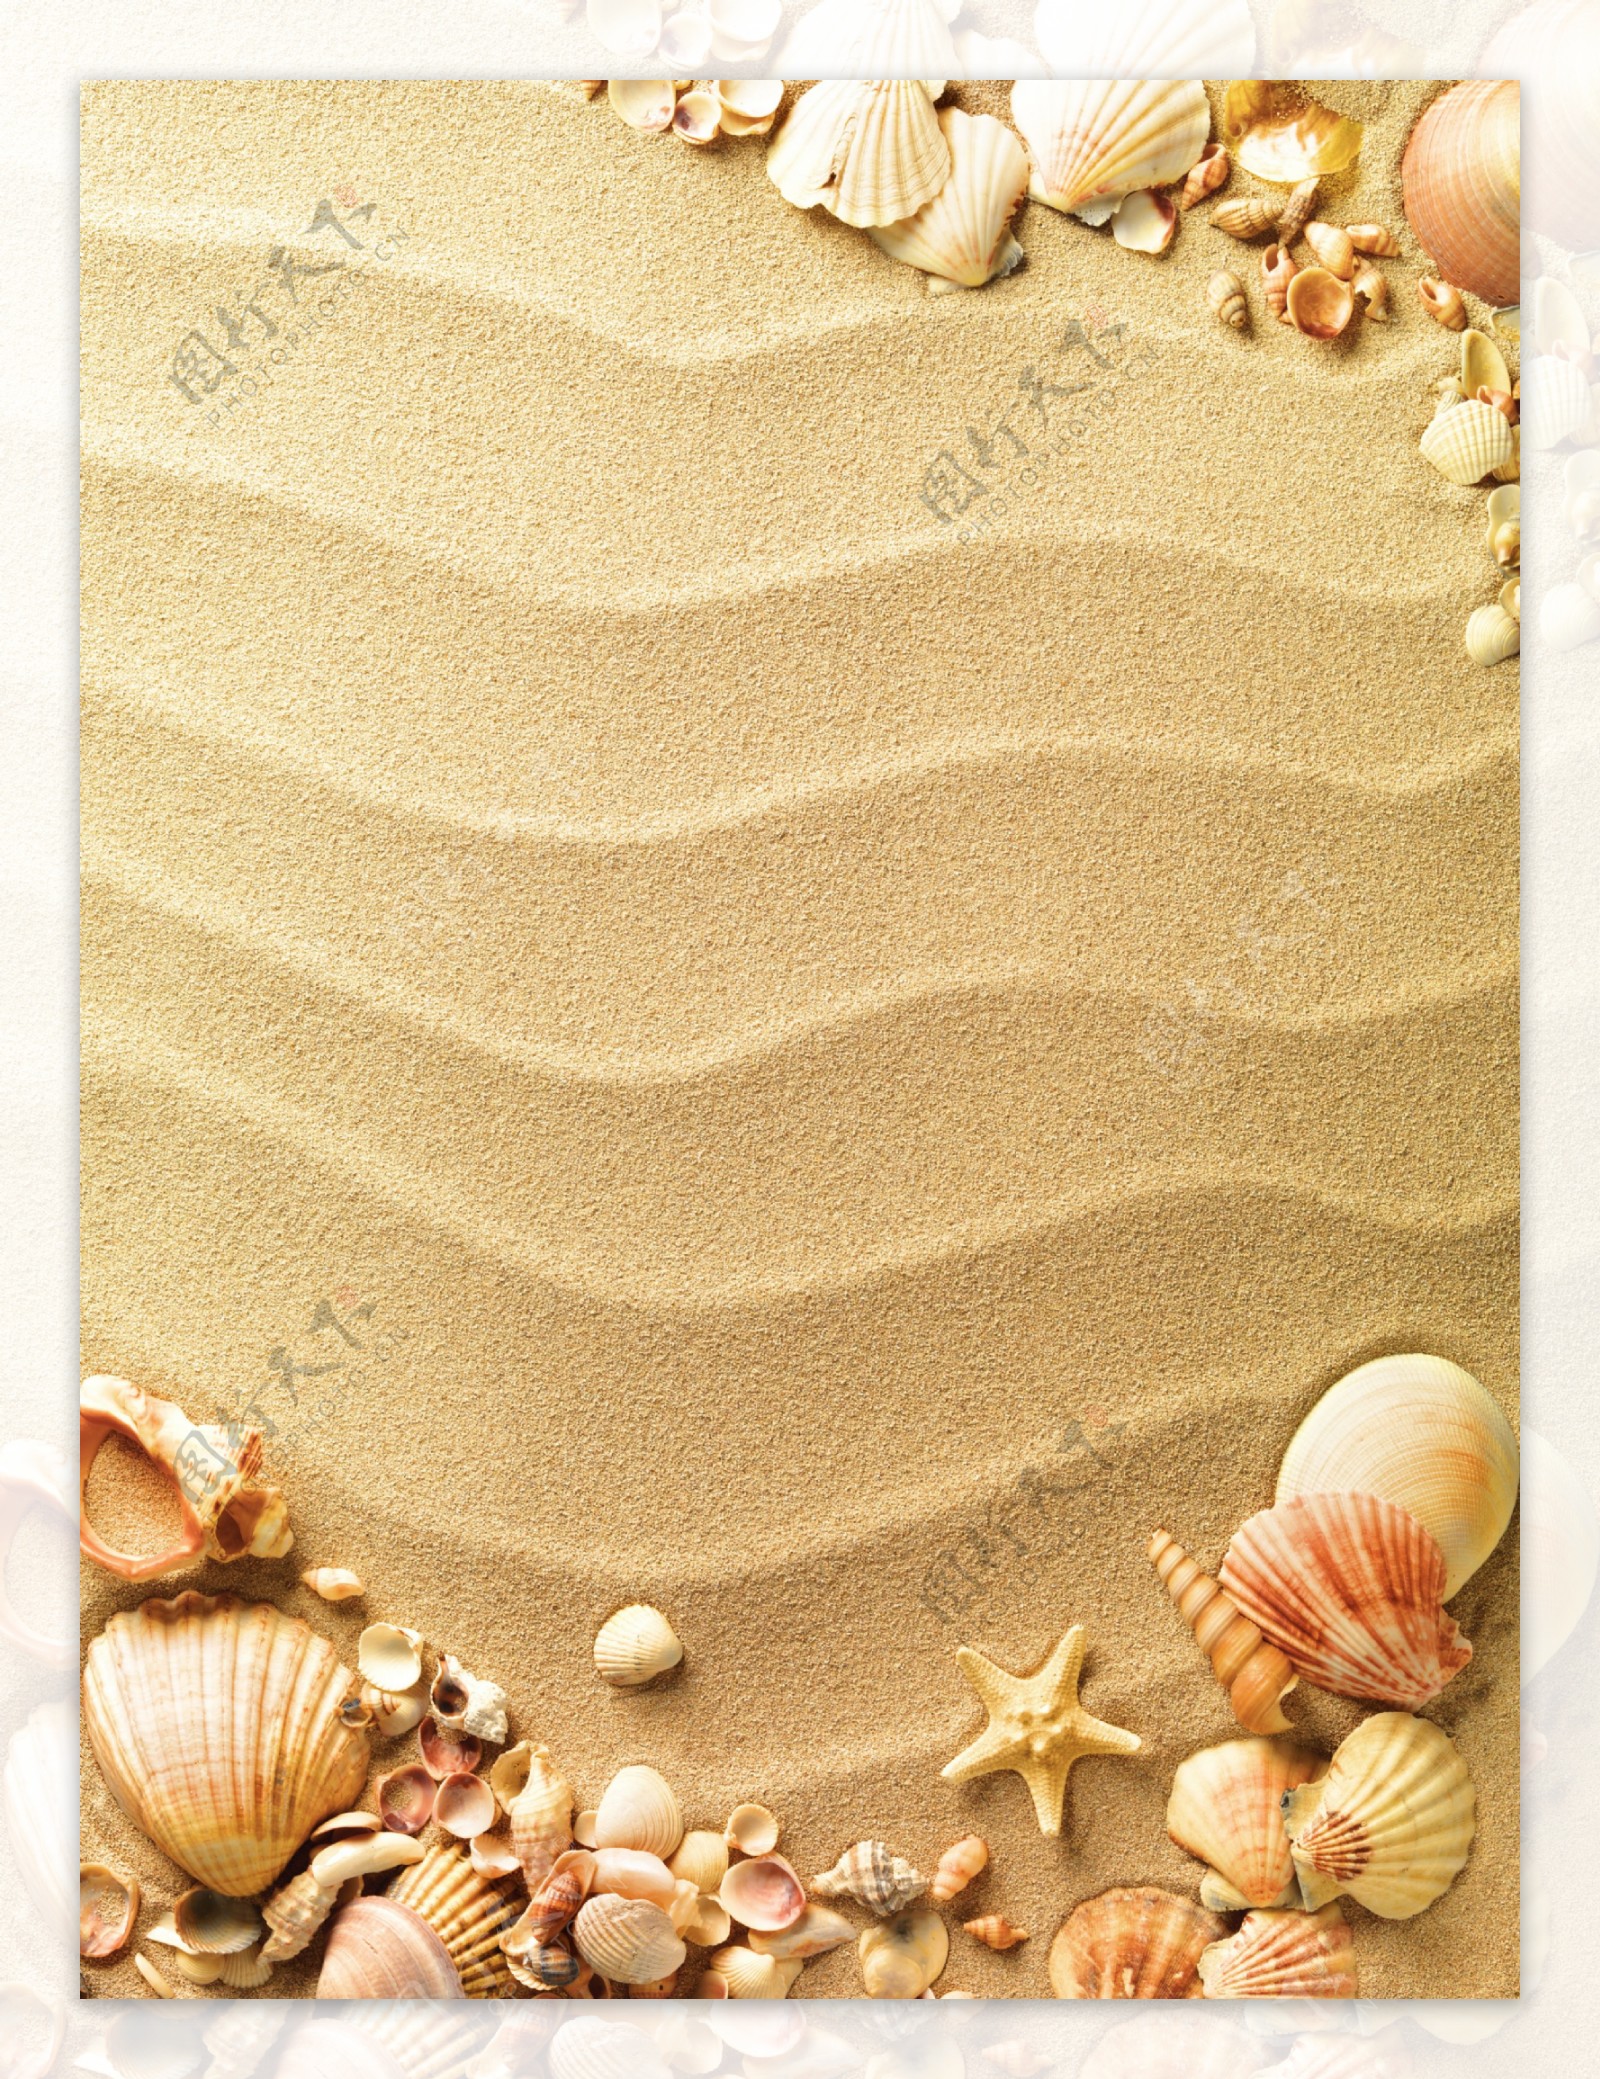 沙滩贝壳海螺海星图片